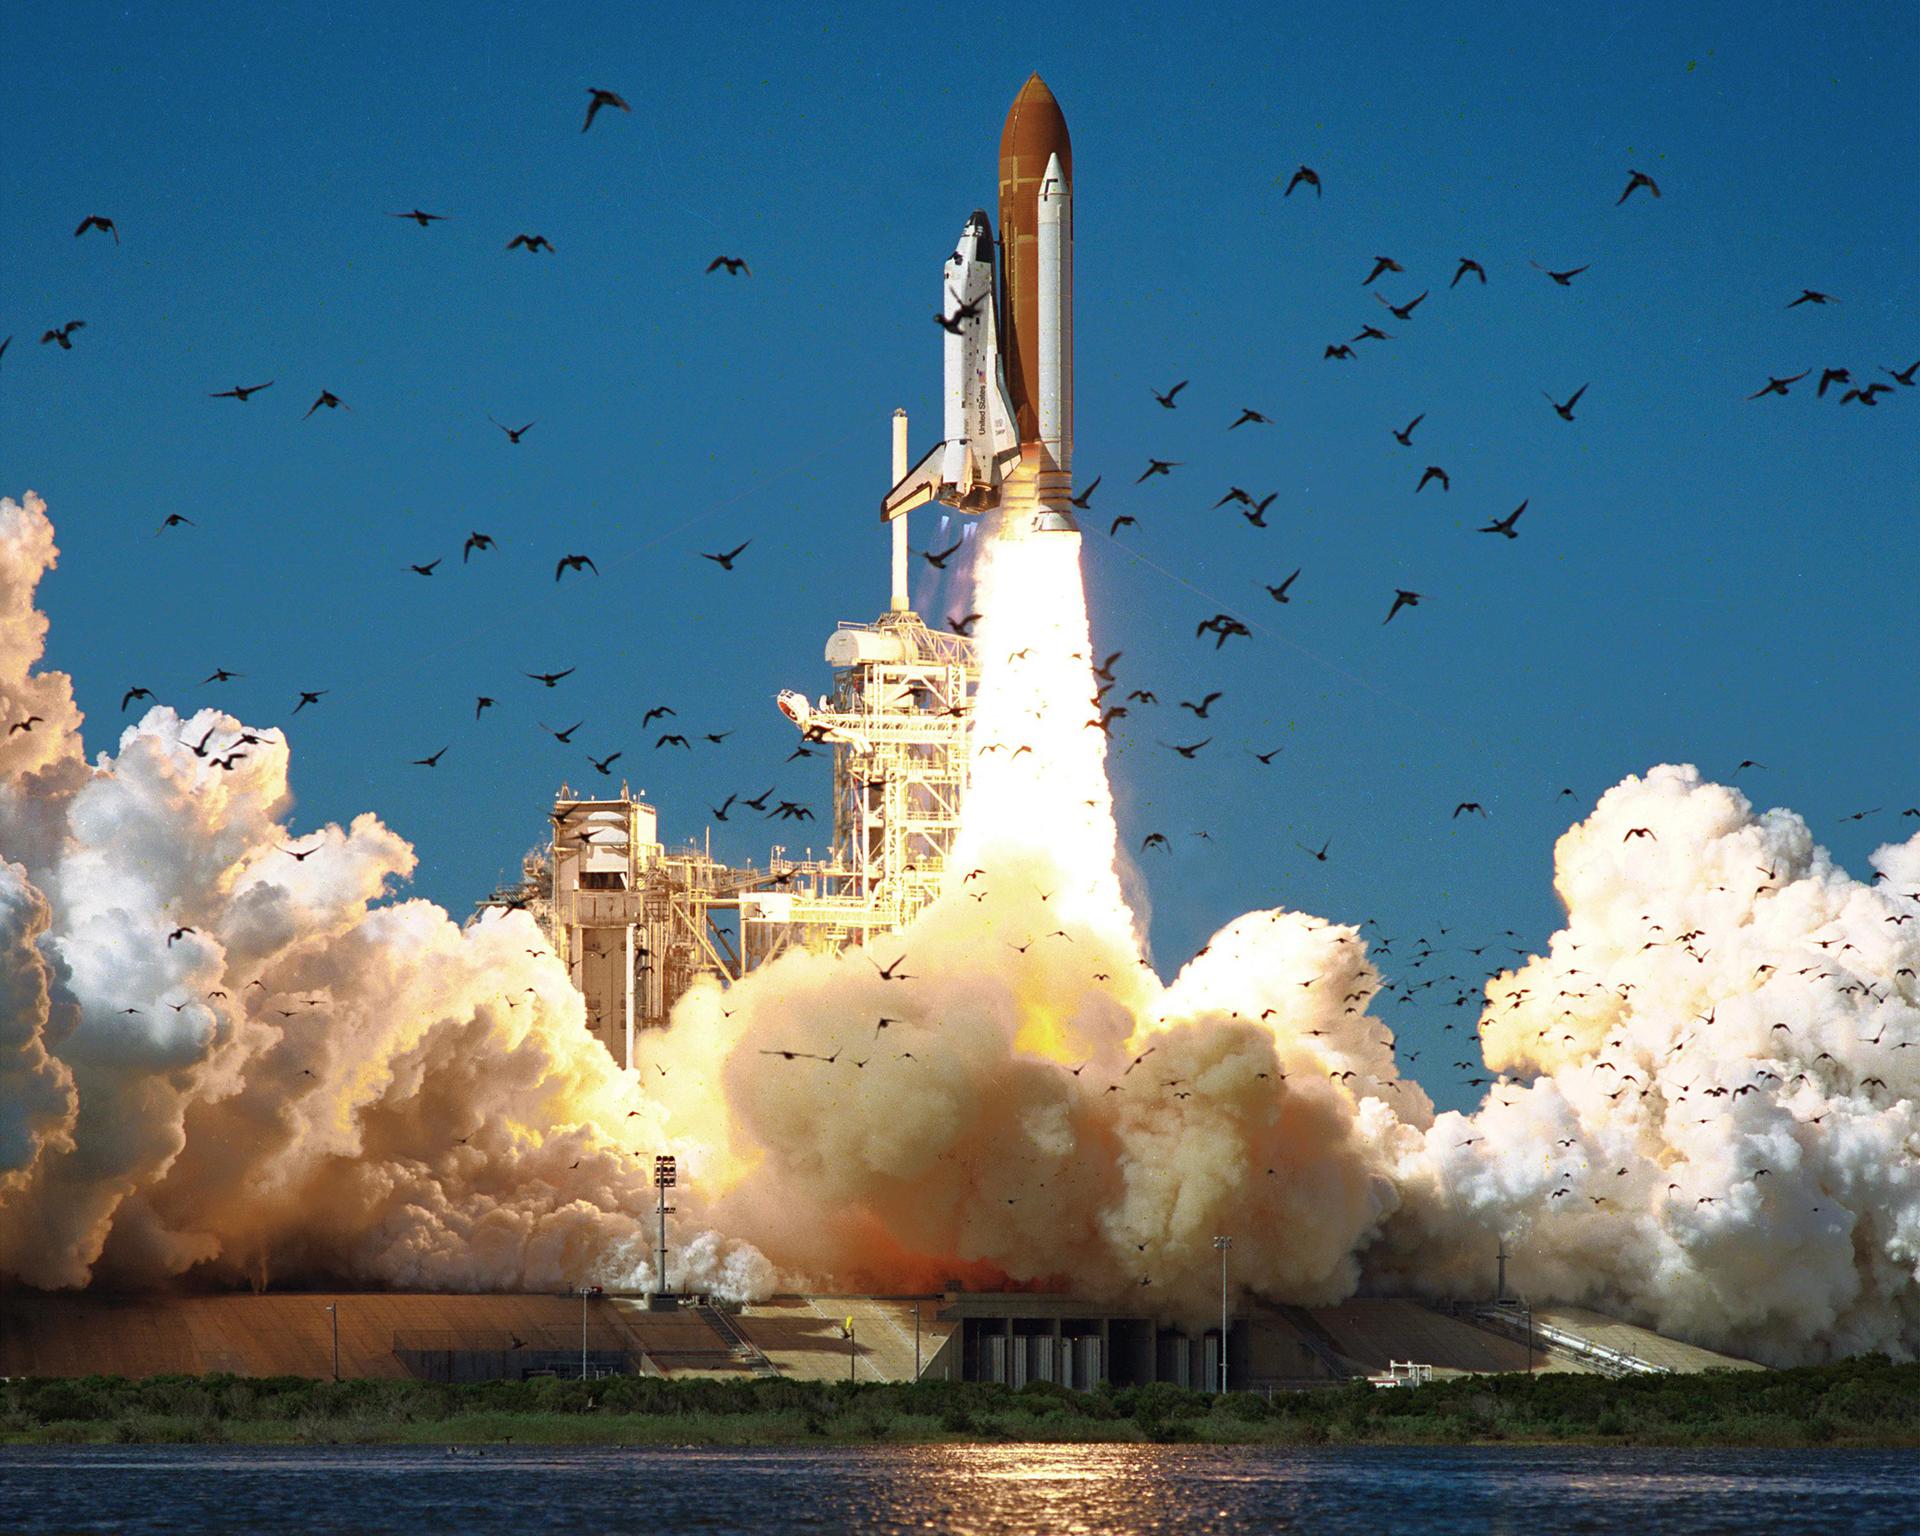 Una de las piezas más grandes de la nave espacial Challenger fue encontrada en el fondo del océano